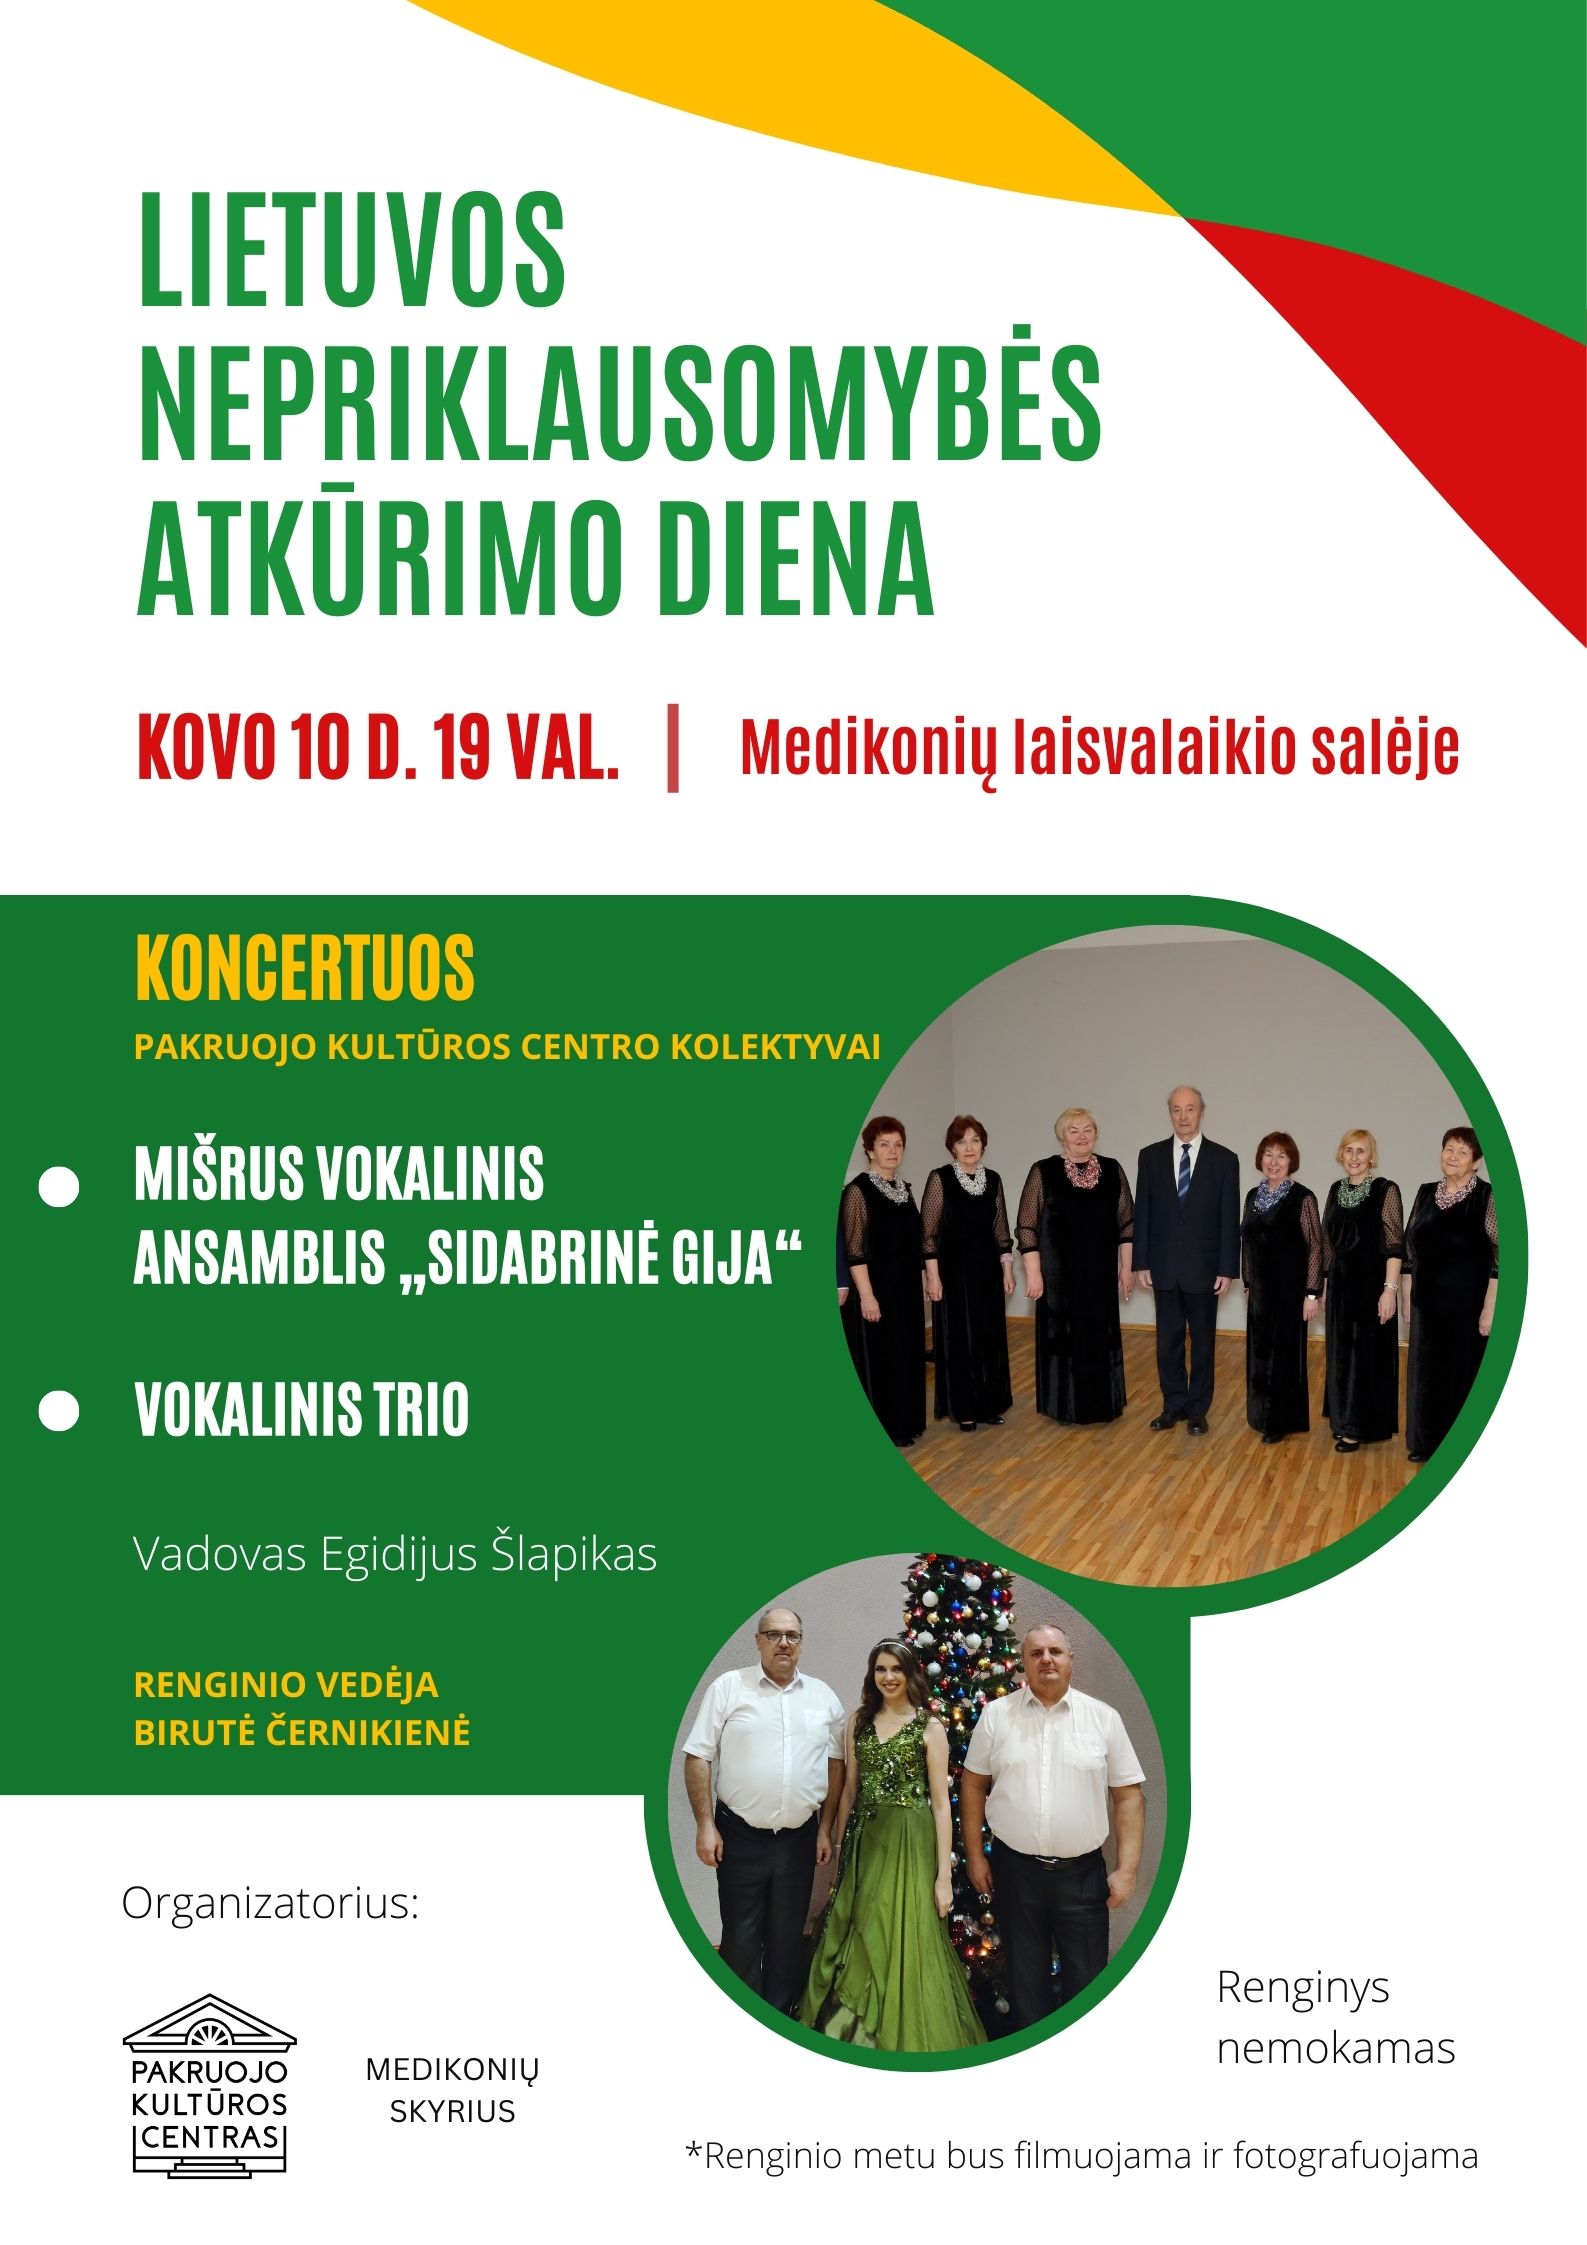 Lietuvos Nepriklausomybės atkūrimo dienos koncertas Medikoniuose